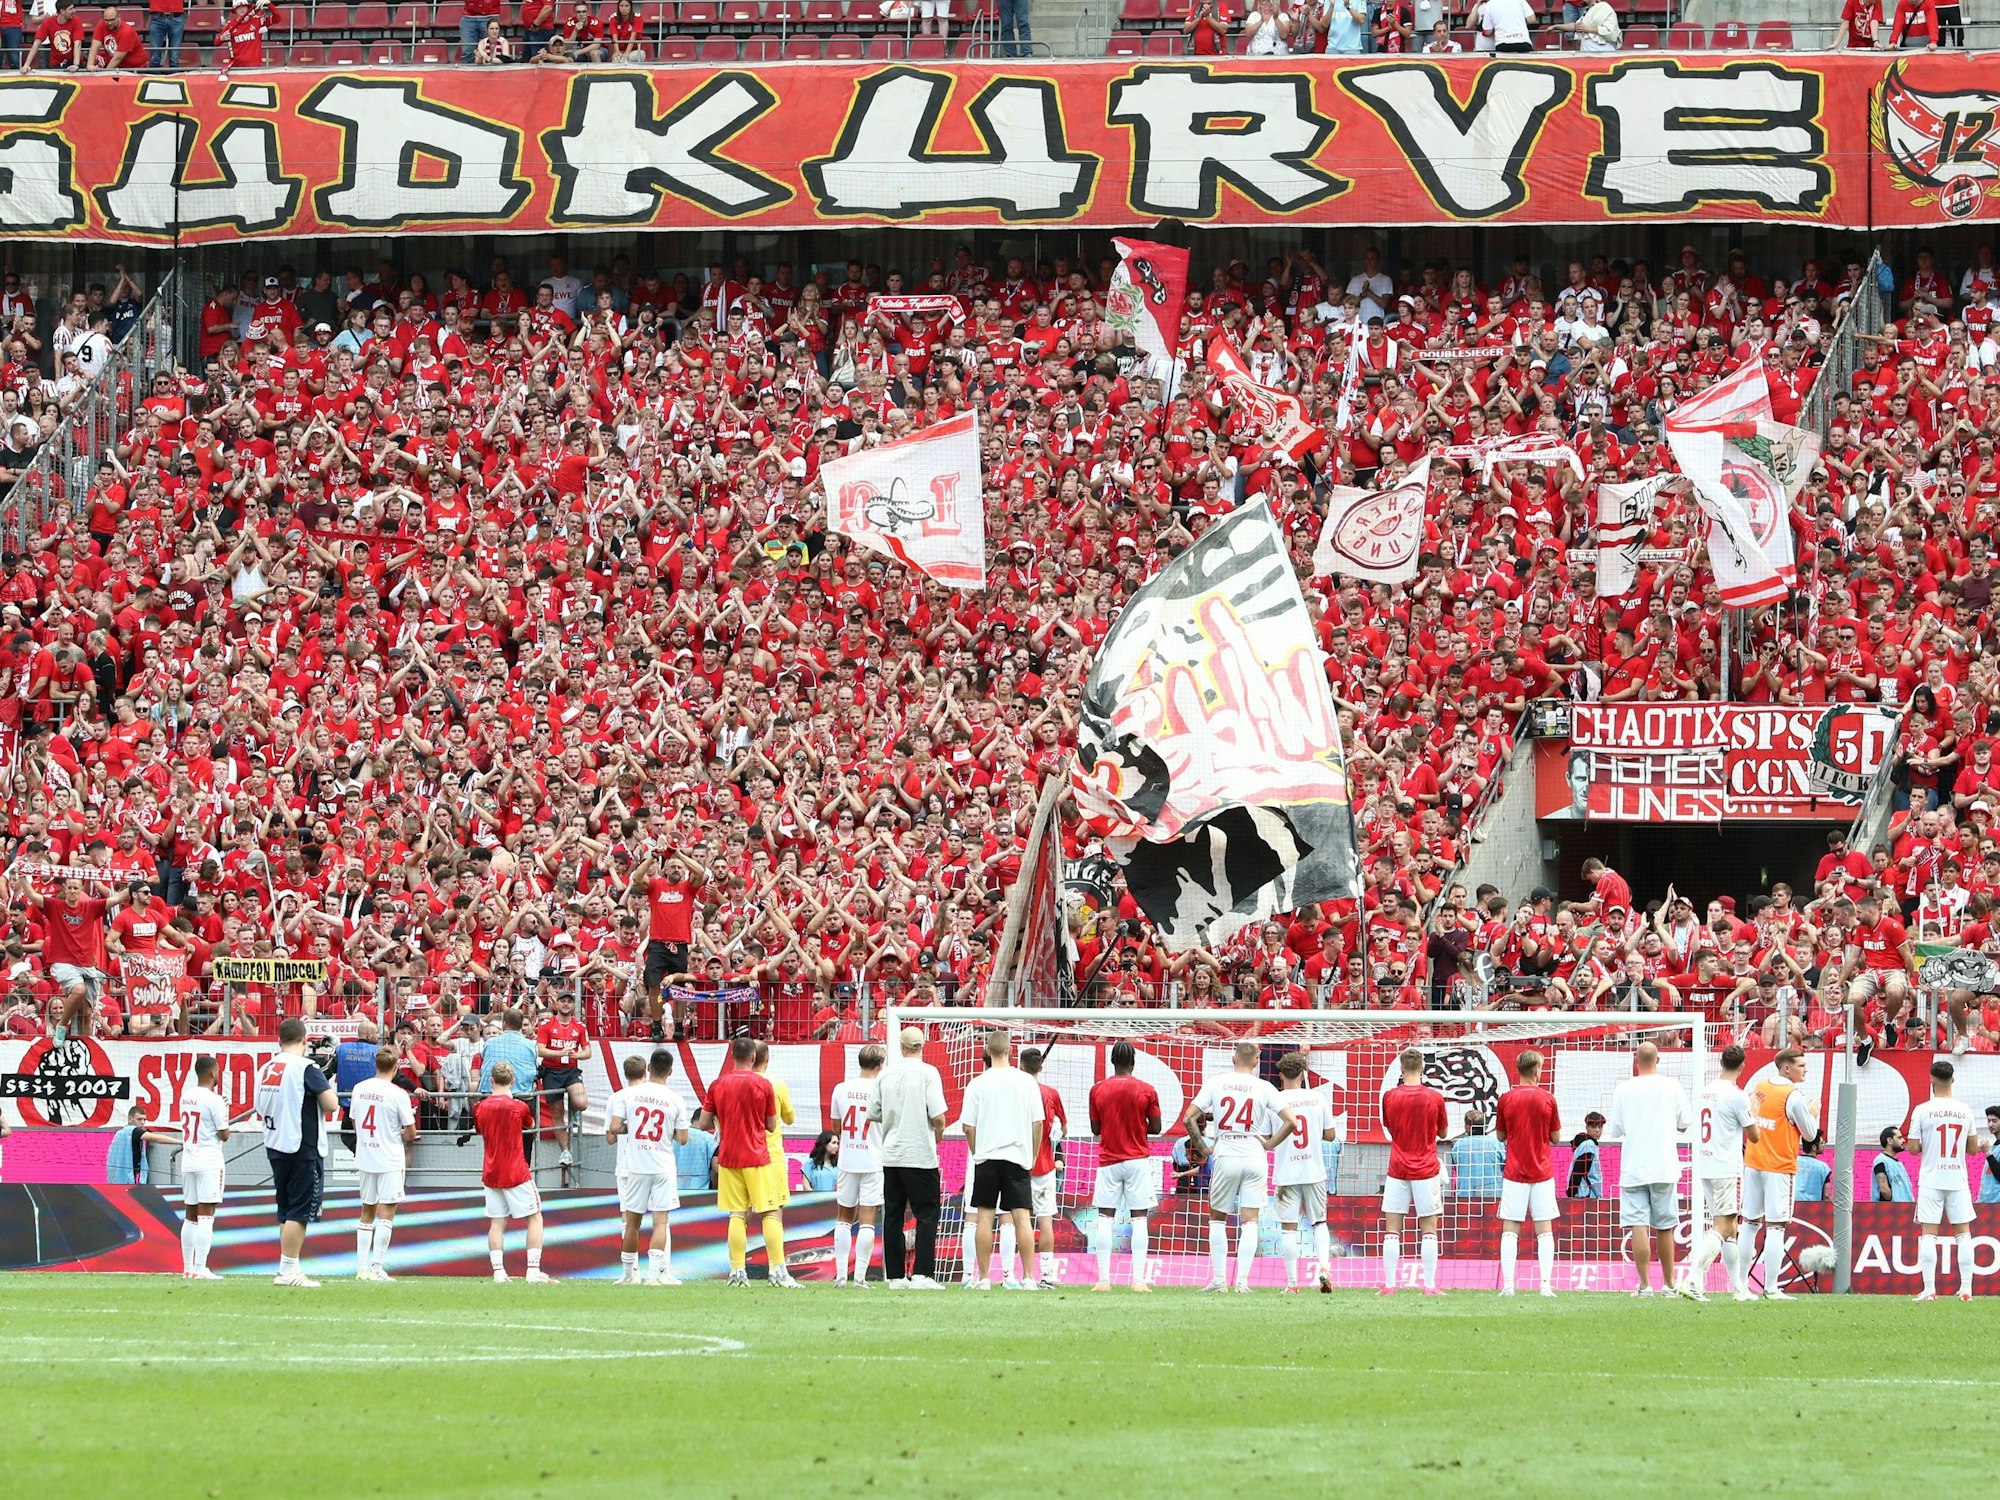 Nach dem Spiel gegen Wolfsburg bedanken sich die Spieler des 1. FC Köln bei den Fans auf der Südtribüne für den Support.








